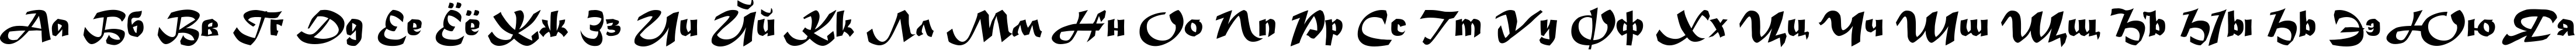 Пример написания русского алфавита шрифтом Madera